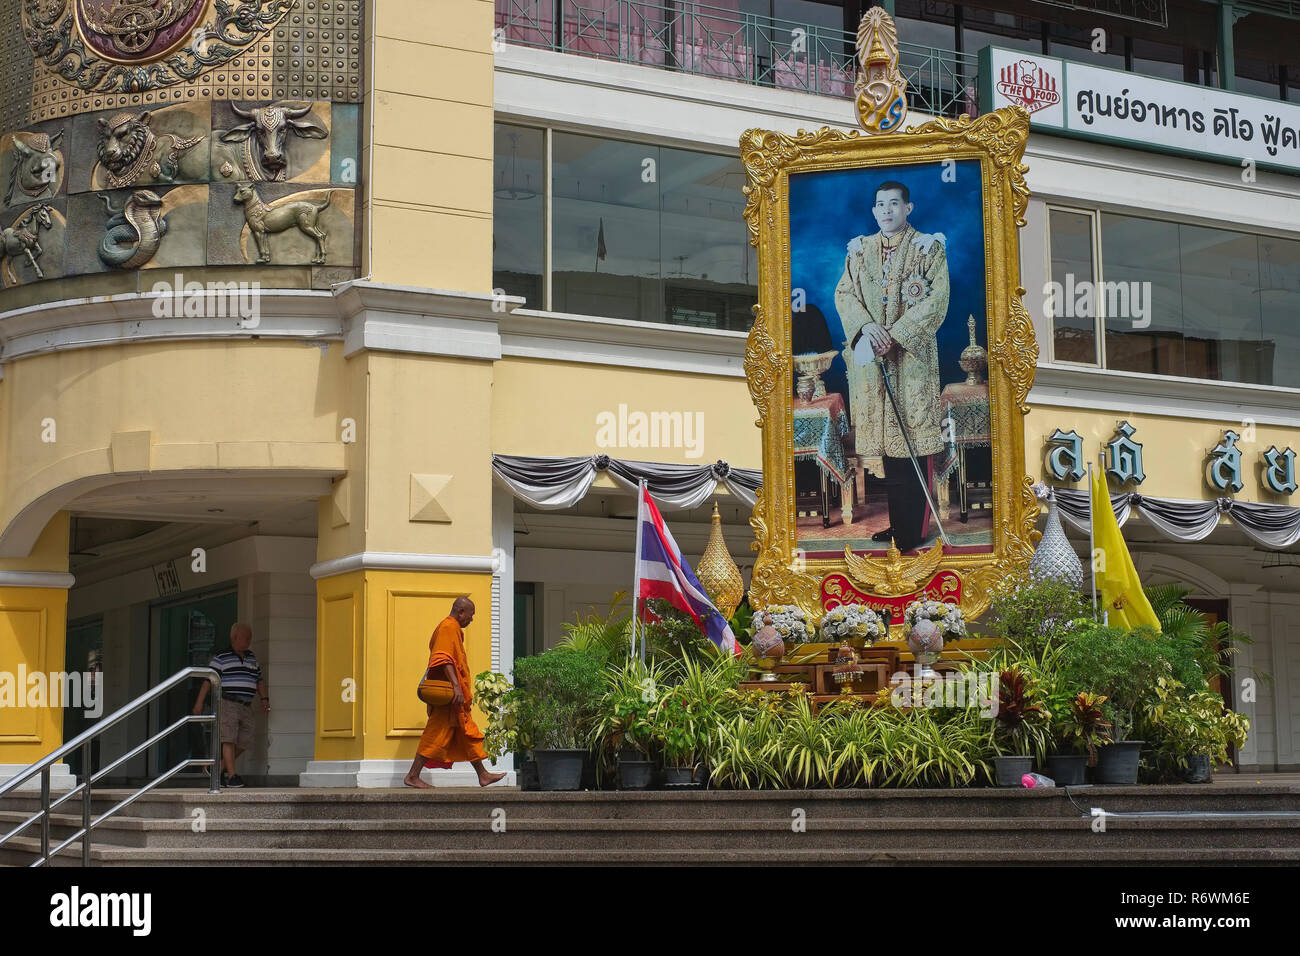 Un moine bouddhiste promenades sous un grand portrait du roi thaïlandais Maha Vajiralongkorn, à l'Old Siam centre commercial en zone Pahurat, Bangkok, Thaïlande Banque D'Images